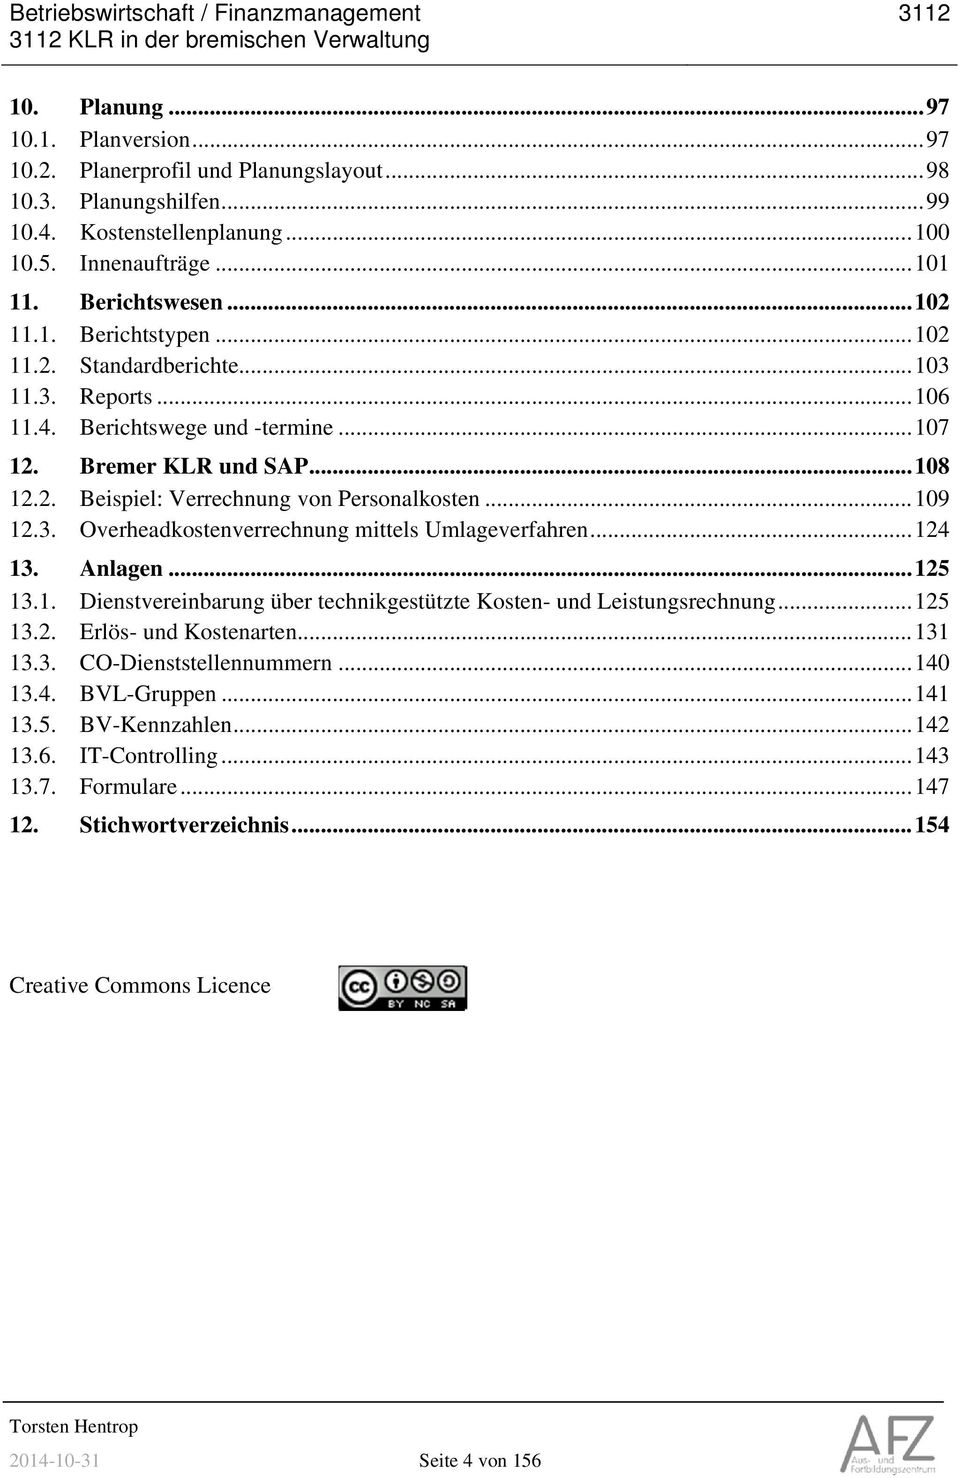 Bremer KLR und SAP... 108 12.2. Beispiel: Verrechnung von Personalkosten... 109 12.3. Overheadkostenverrechnung mittels Umlageverfahren... 124 13. Anlagen... 125 13.1. Dienstvereinbarung über technikgestützte Kosten- und Leistungsrechnung.